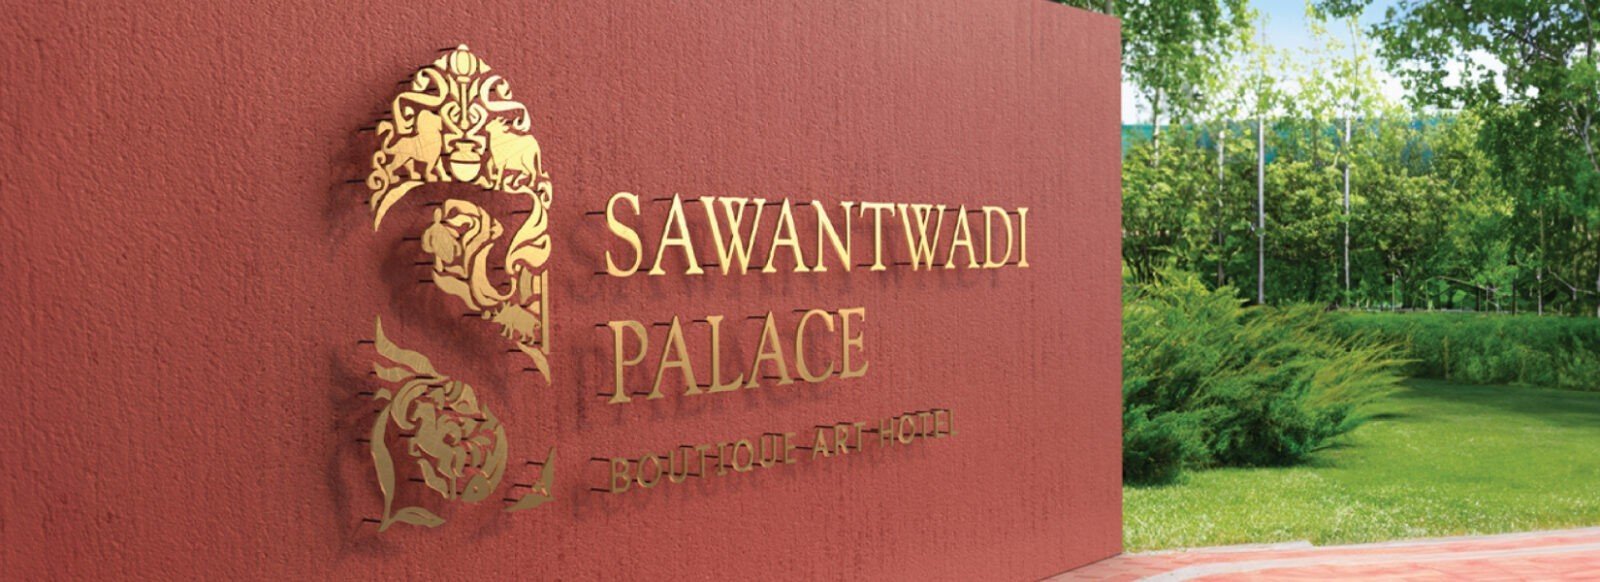 Sawantwadi Palace – Boutique Art Hotel